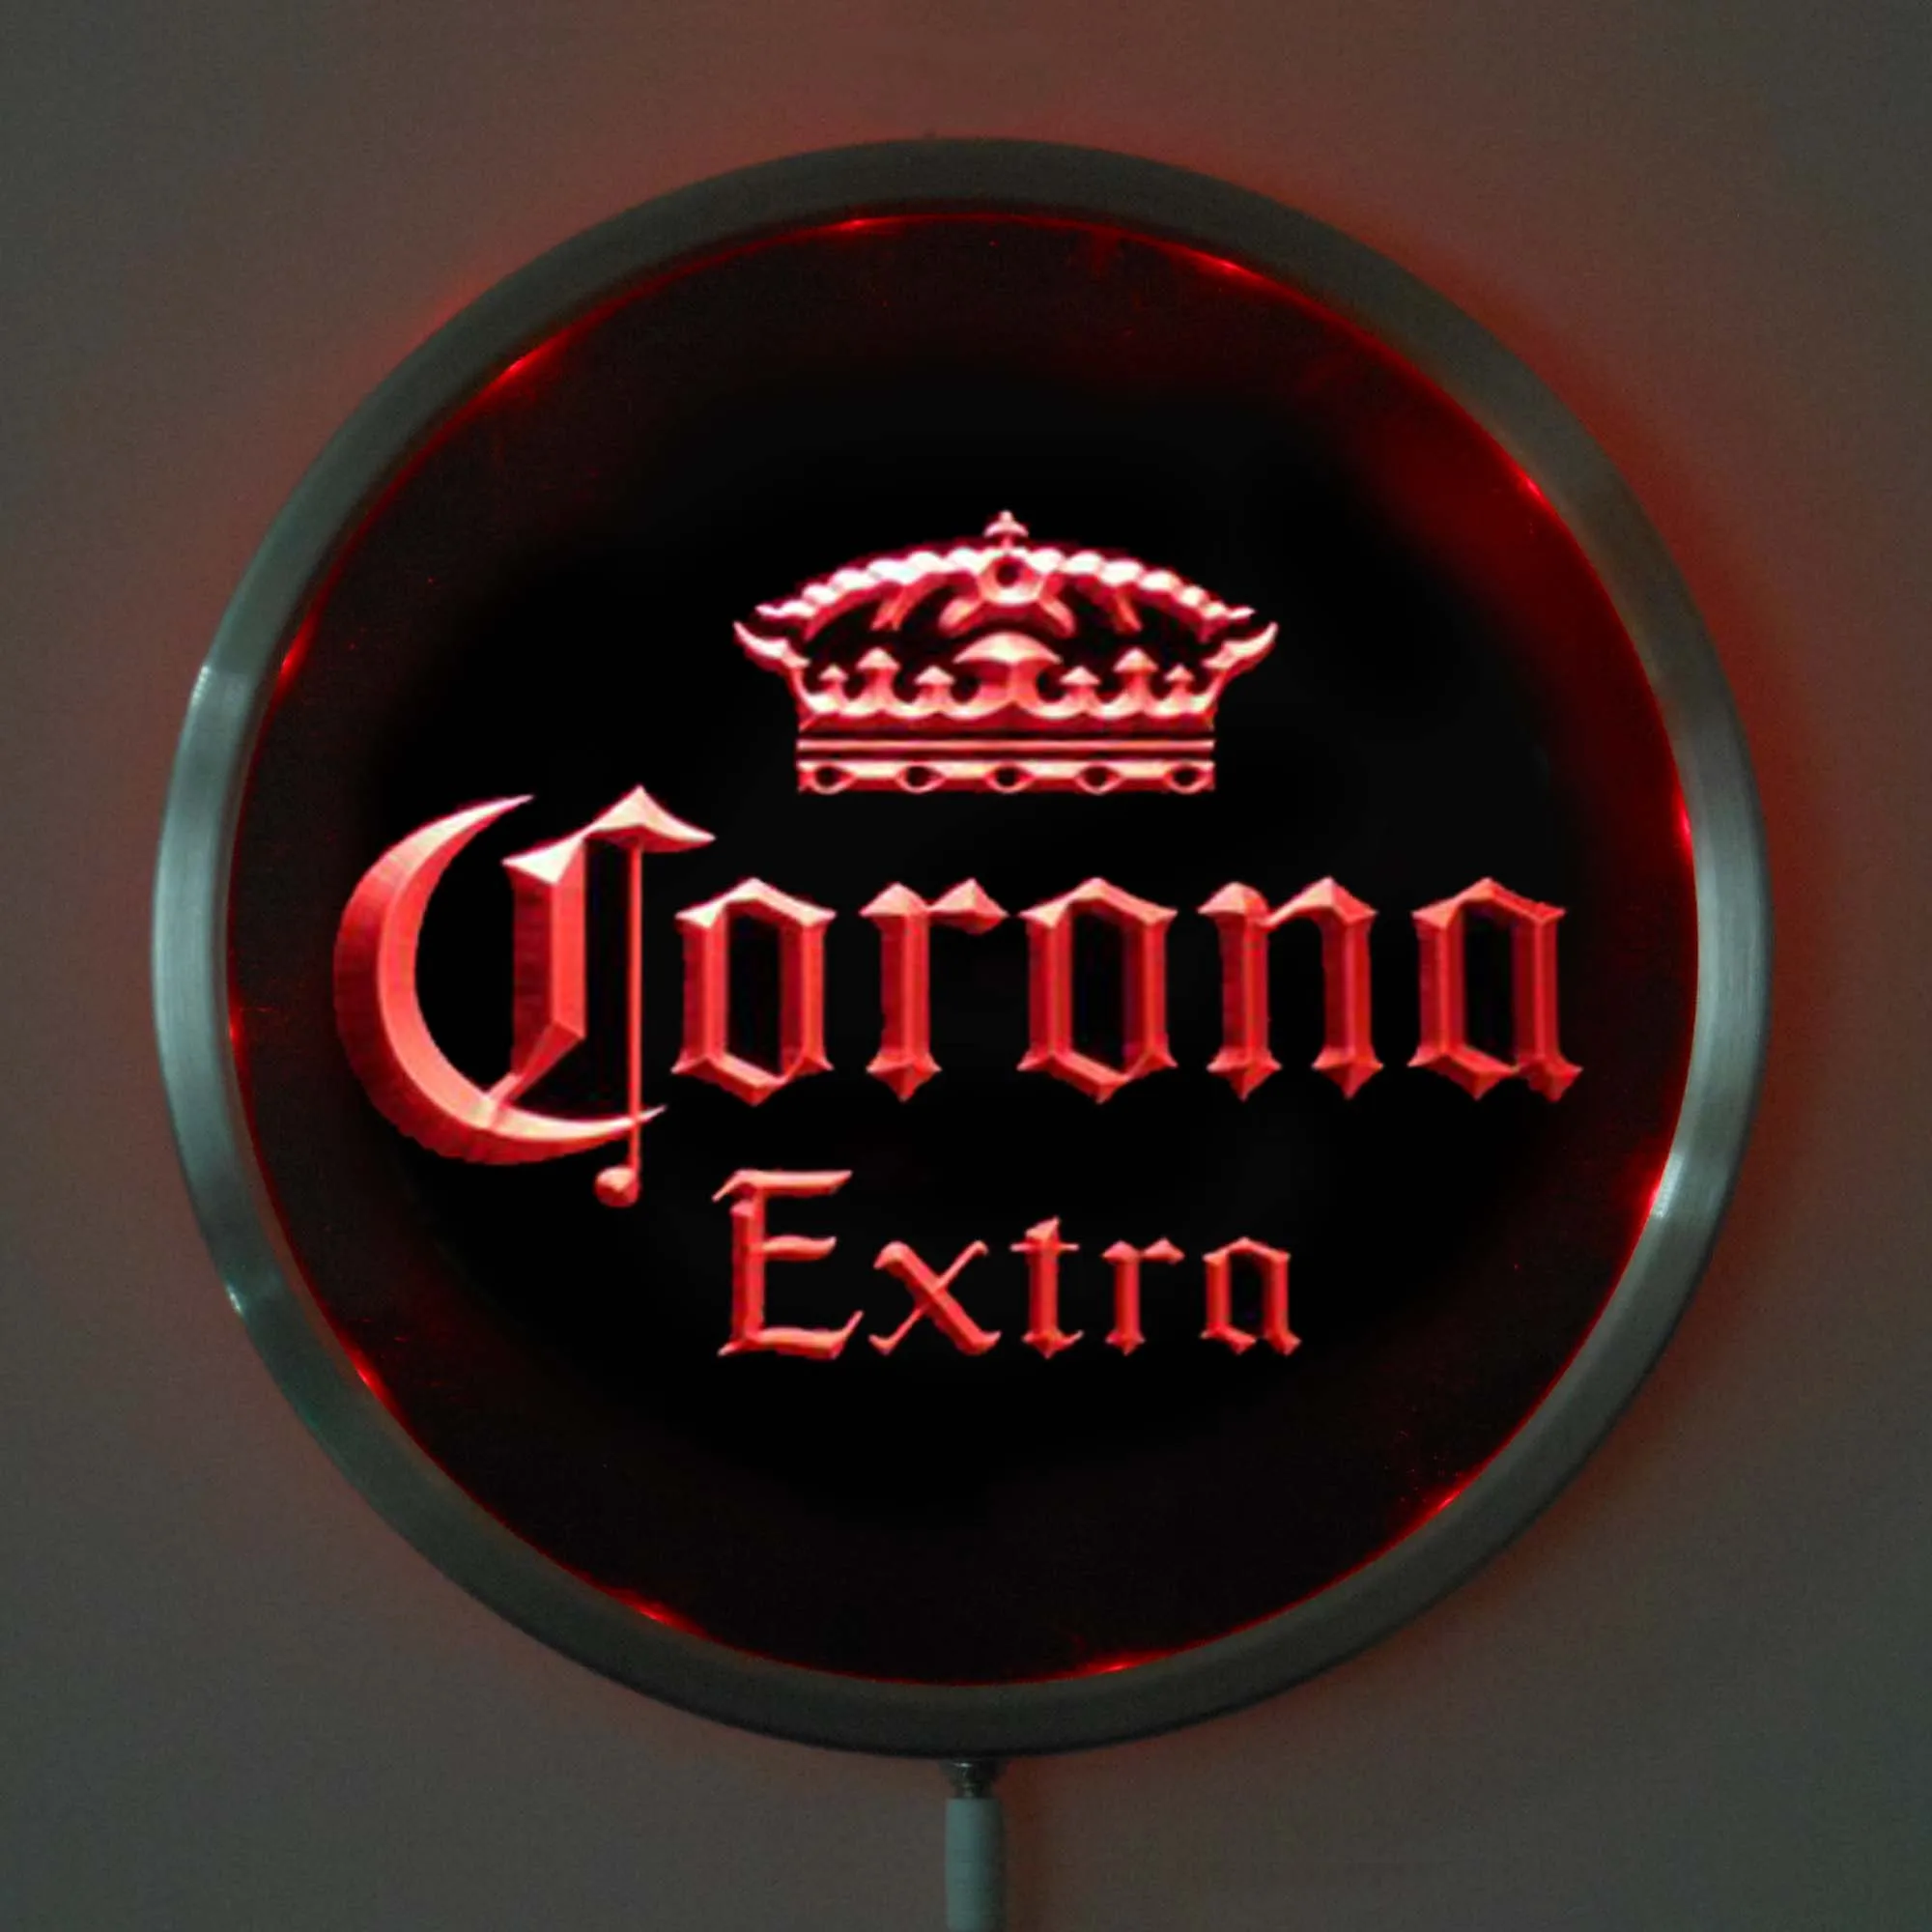 Rs-a0013 Corona Extra Beer светодиодный неоновый круглый знак 25 см/10 дюймов-RGB вывеска для бара многоцветный пульт дистанционного управления